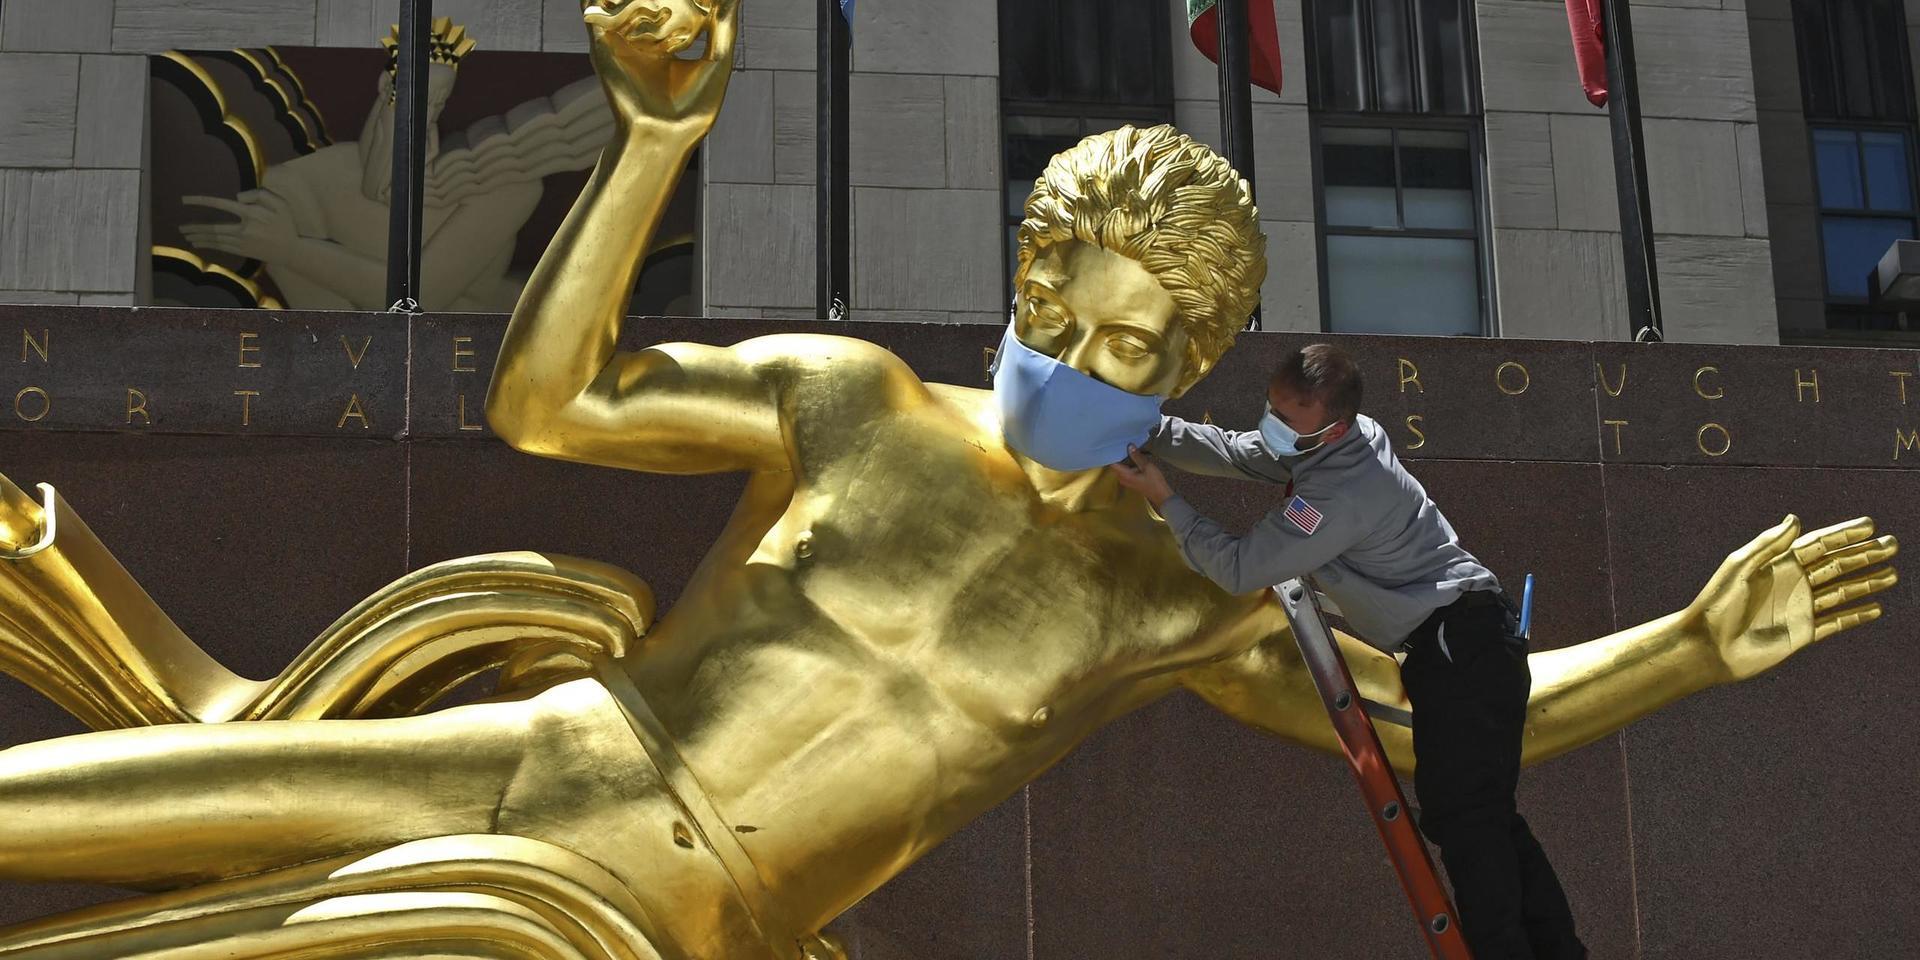 Coronaviruset har drabbat politiska ledare världen över. På bilden förses en staty i amerikanska New York med ett symboliskt munskydd i början av juni.